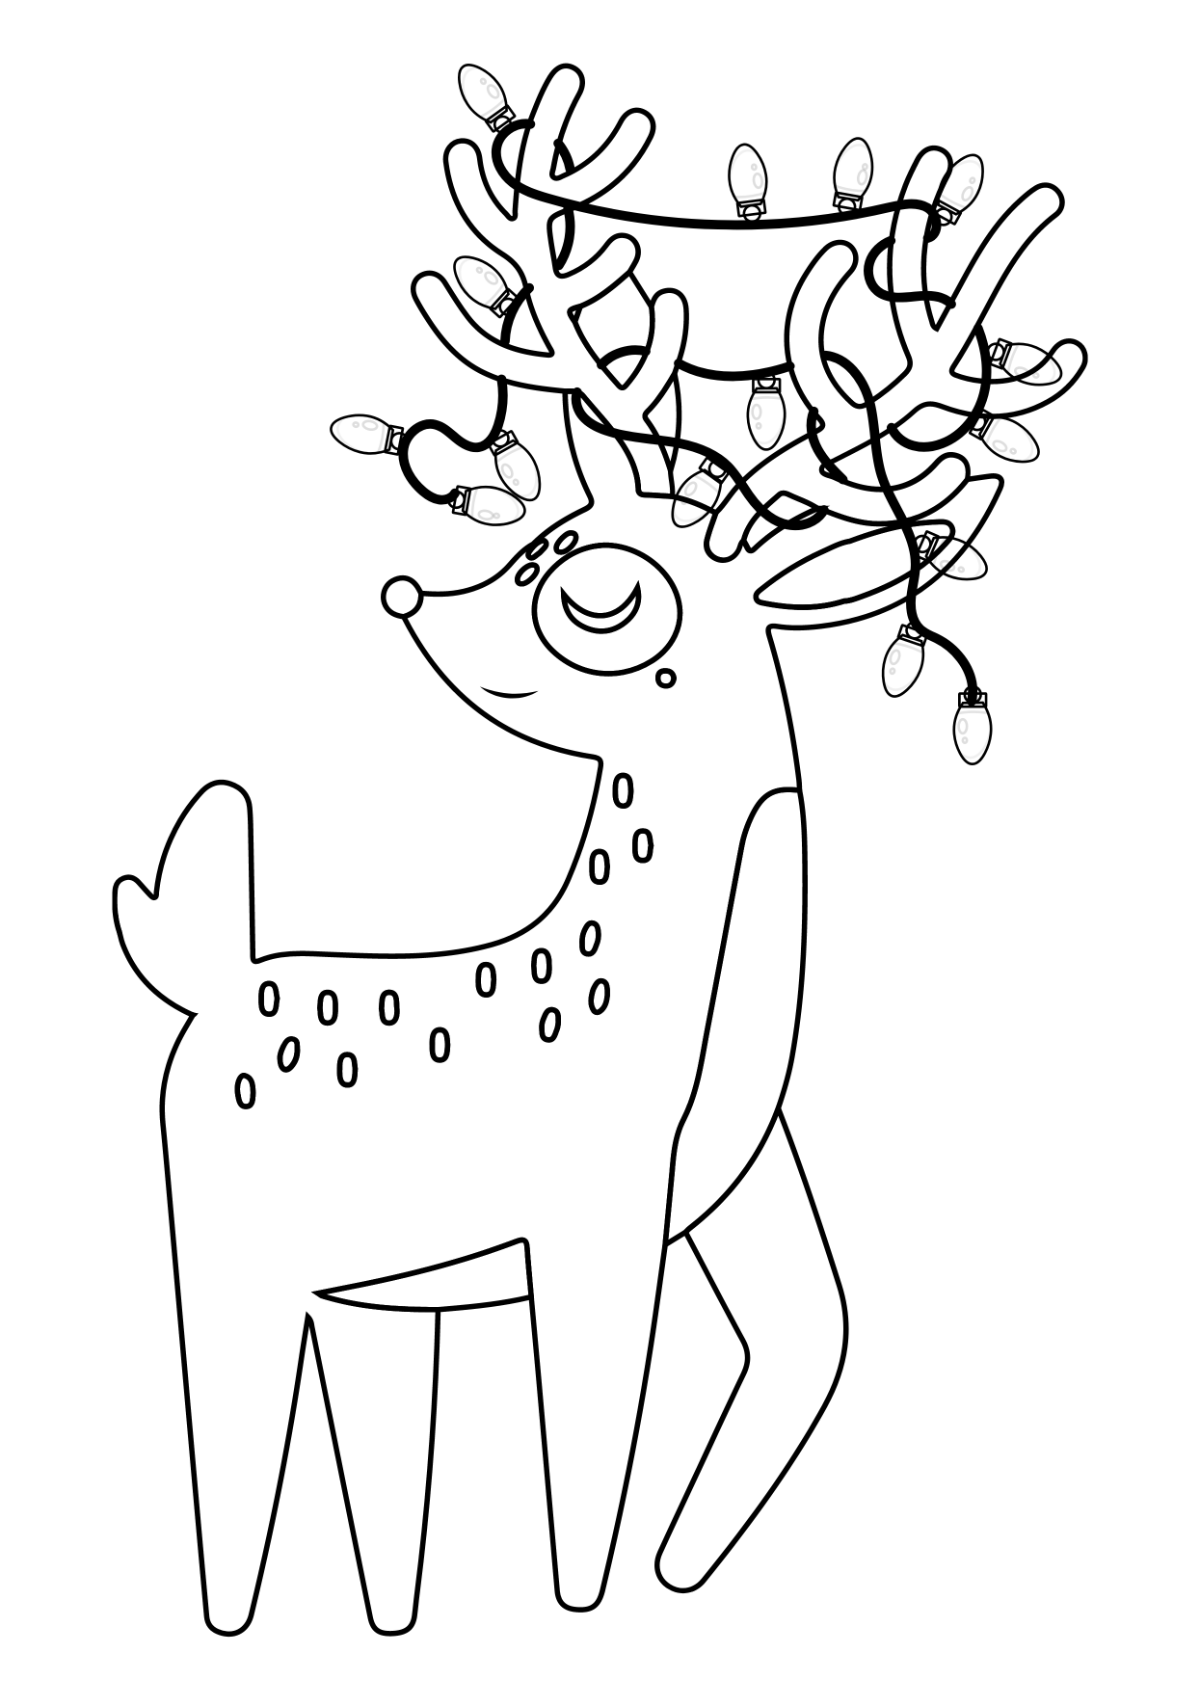 Christmas Reindeer Drawing